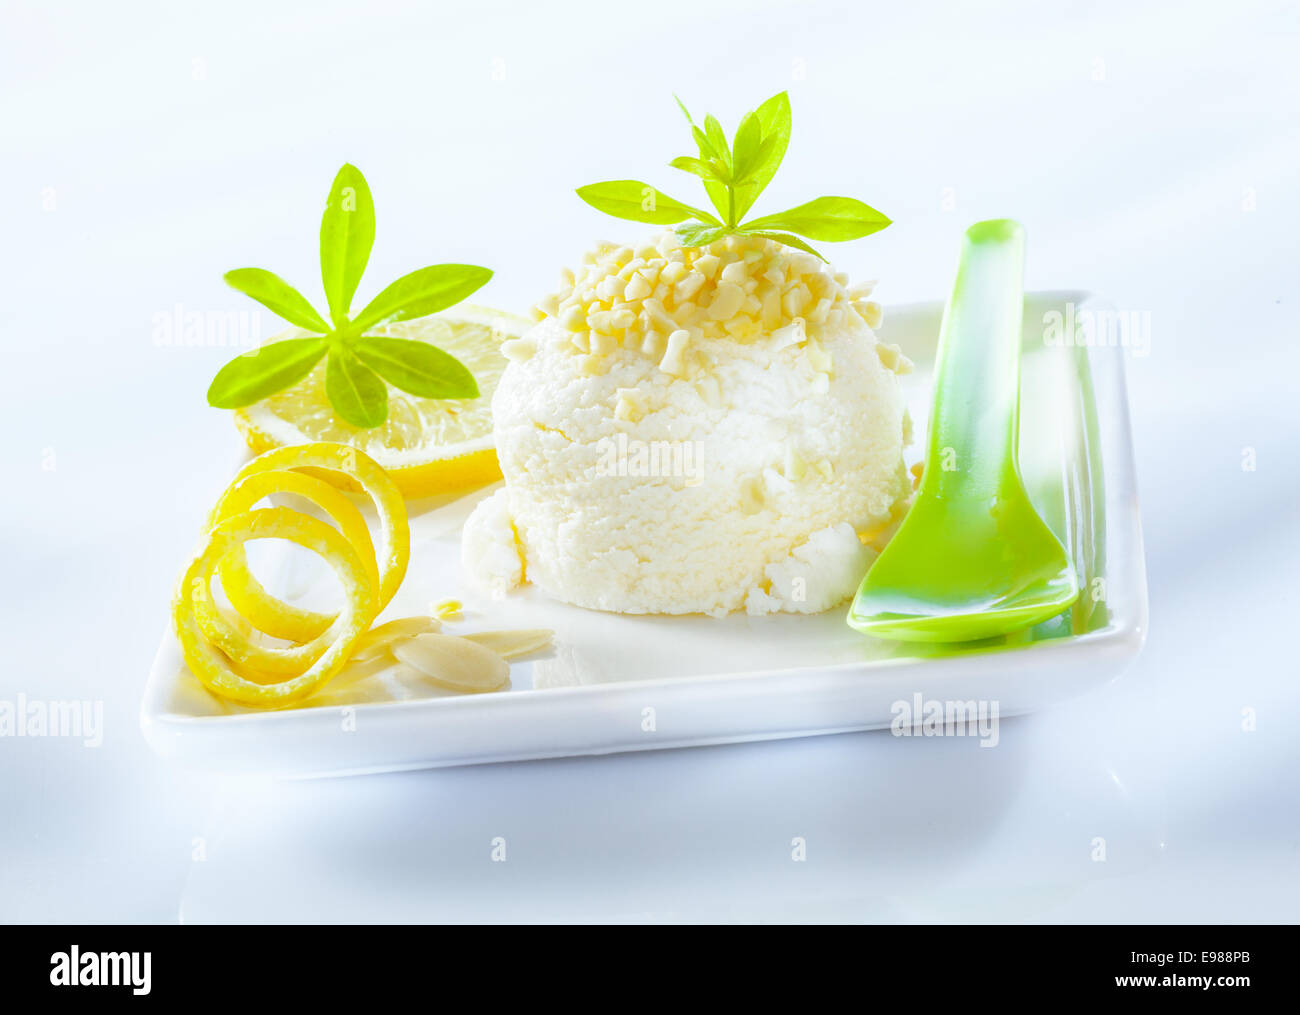 Sorbet au citron aigre rafraîchissante dessert servi avec le zeste de citron en spirale sur une assiette en porcelaine carrée Banque D'Images